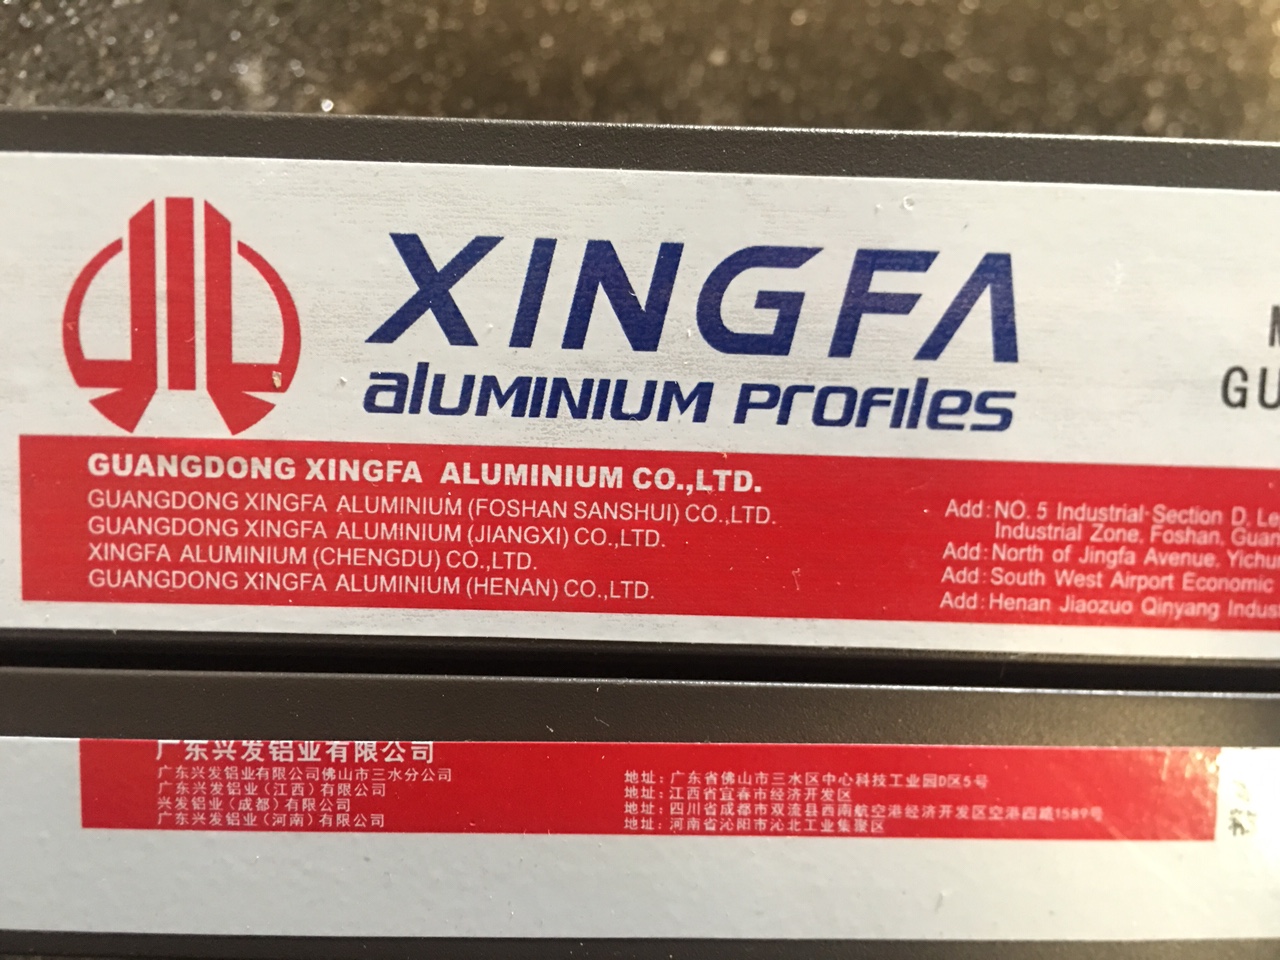 Thanh nhôm Xingfa chính hãng tem đỏ nhập khẩu từ Quảng Đông, Trung Quốc.